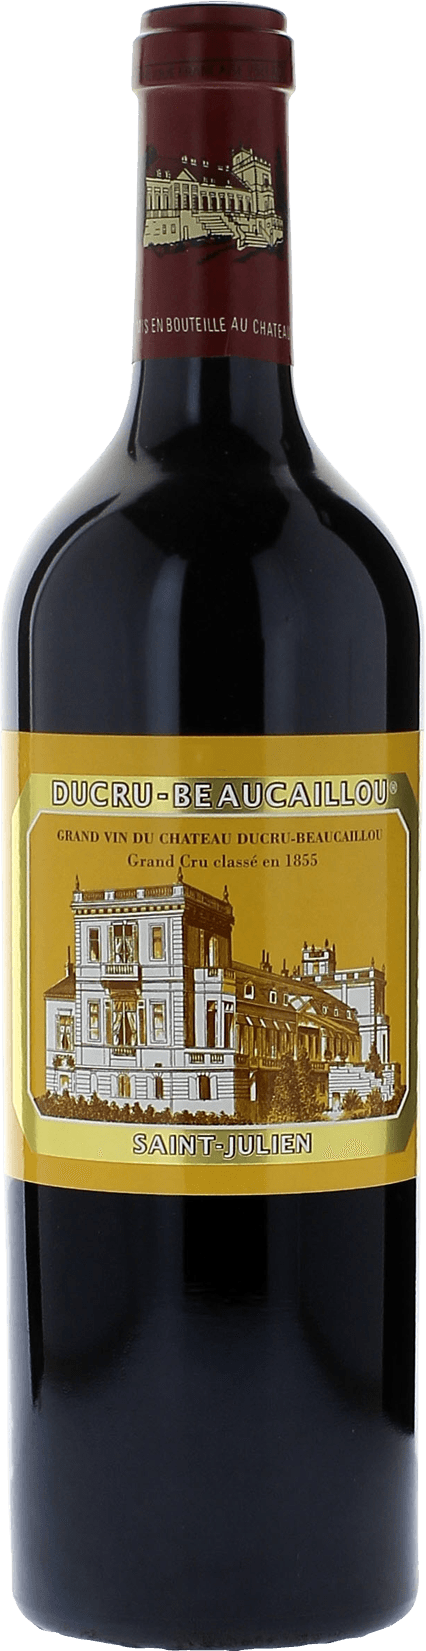 Ducru beaucaillou 1996 2me Grand cru class Saint-Julien, Bordeaux rouge